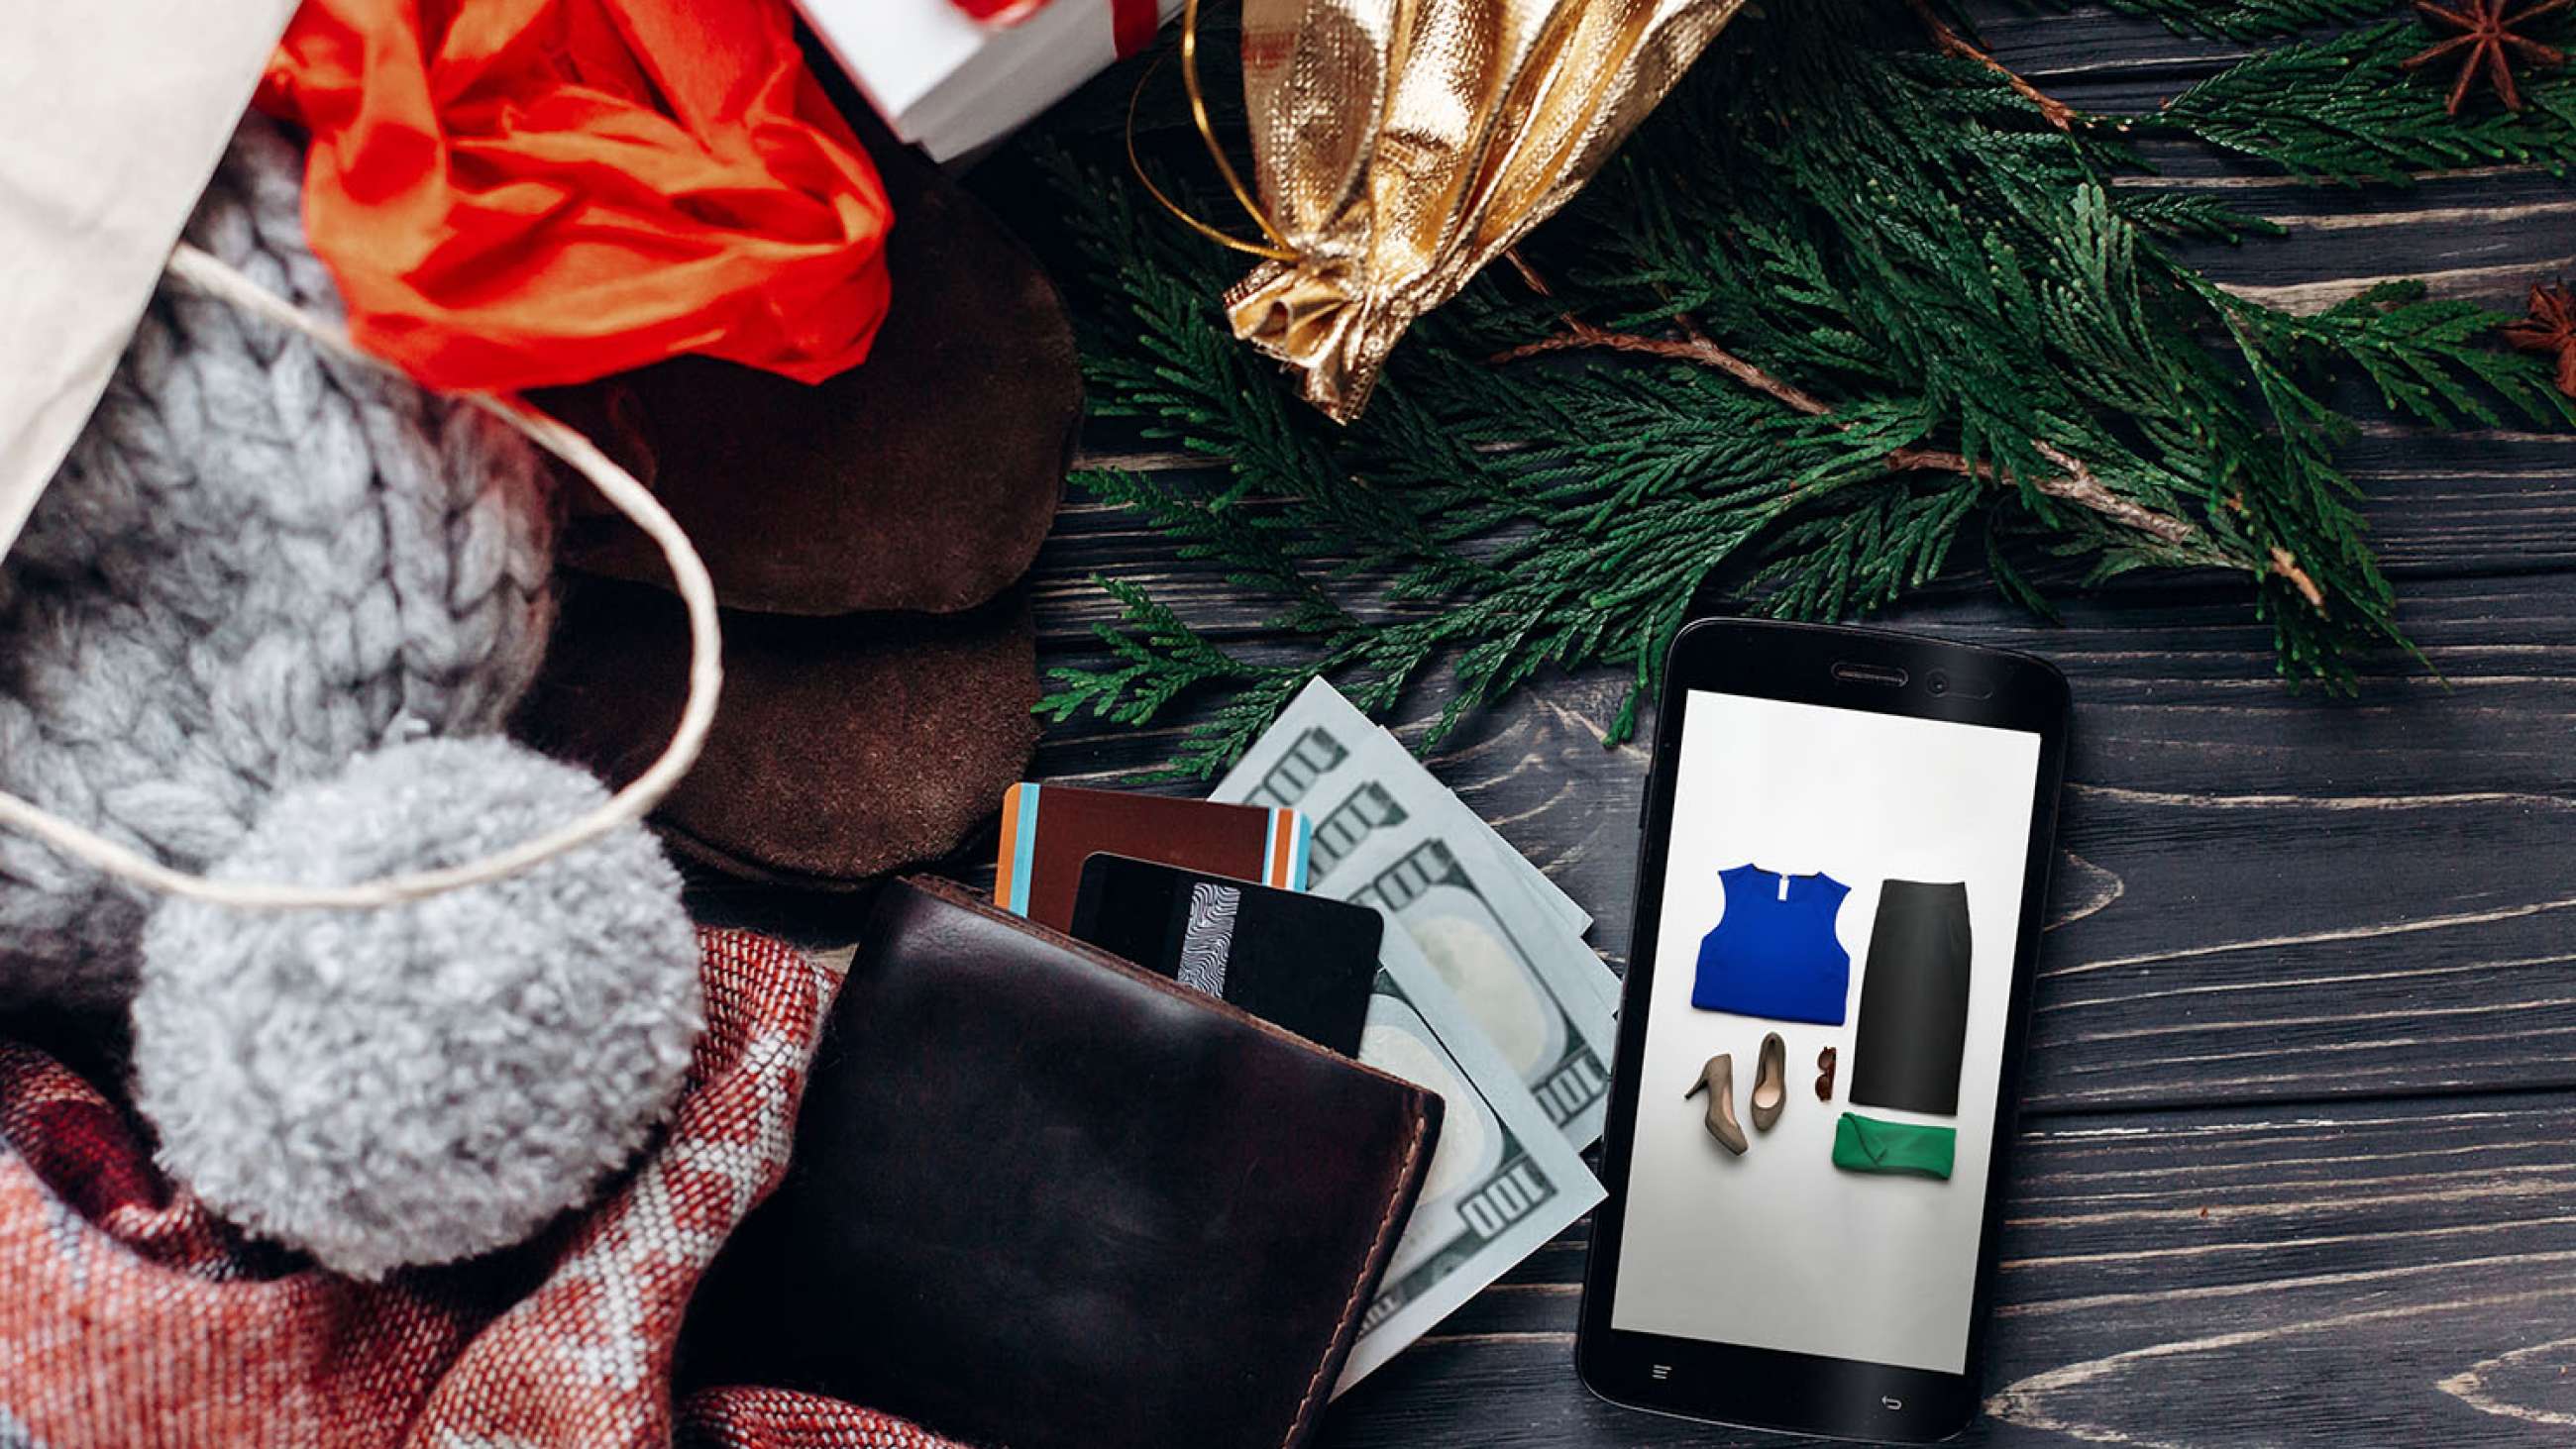 Julegaver som lommebok, kort, mobil og lue ligger på et bord.